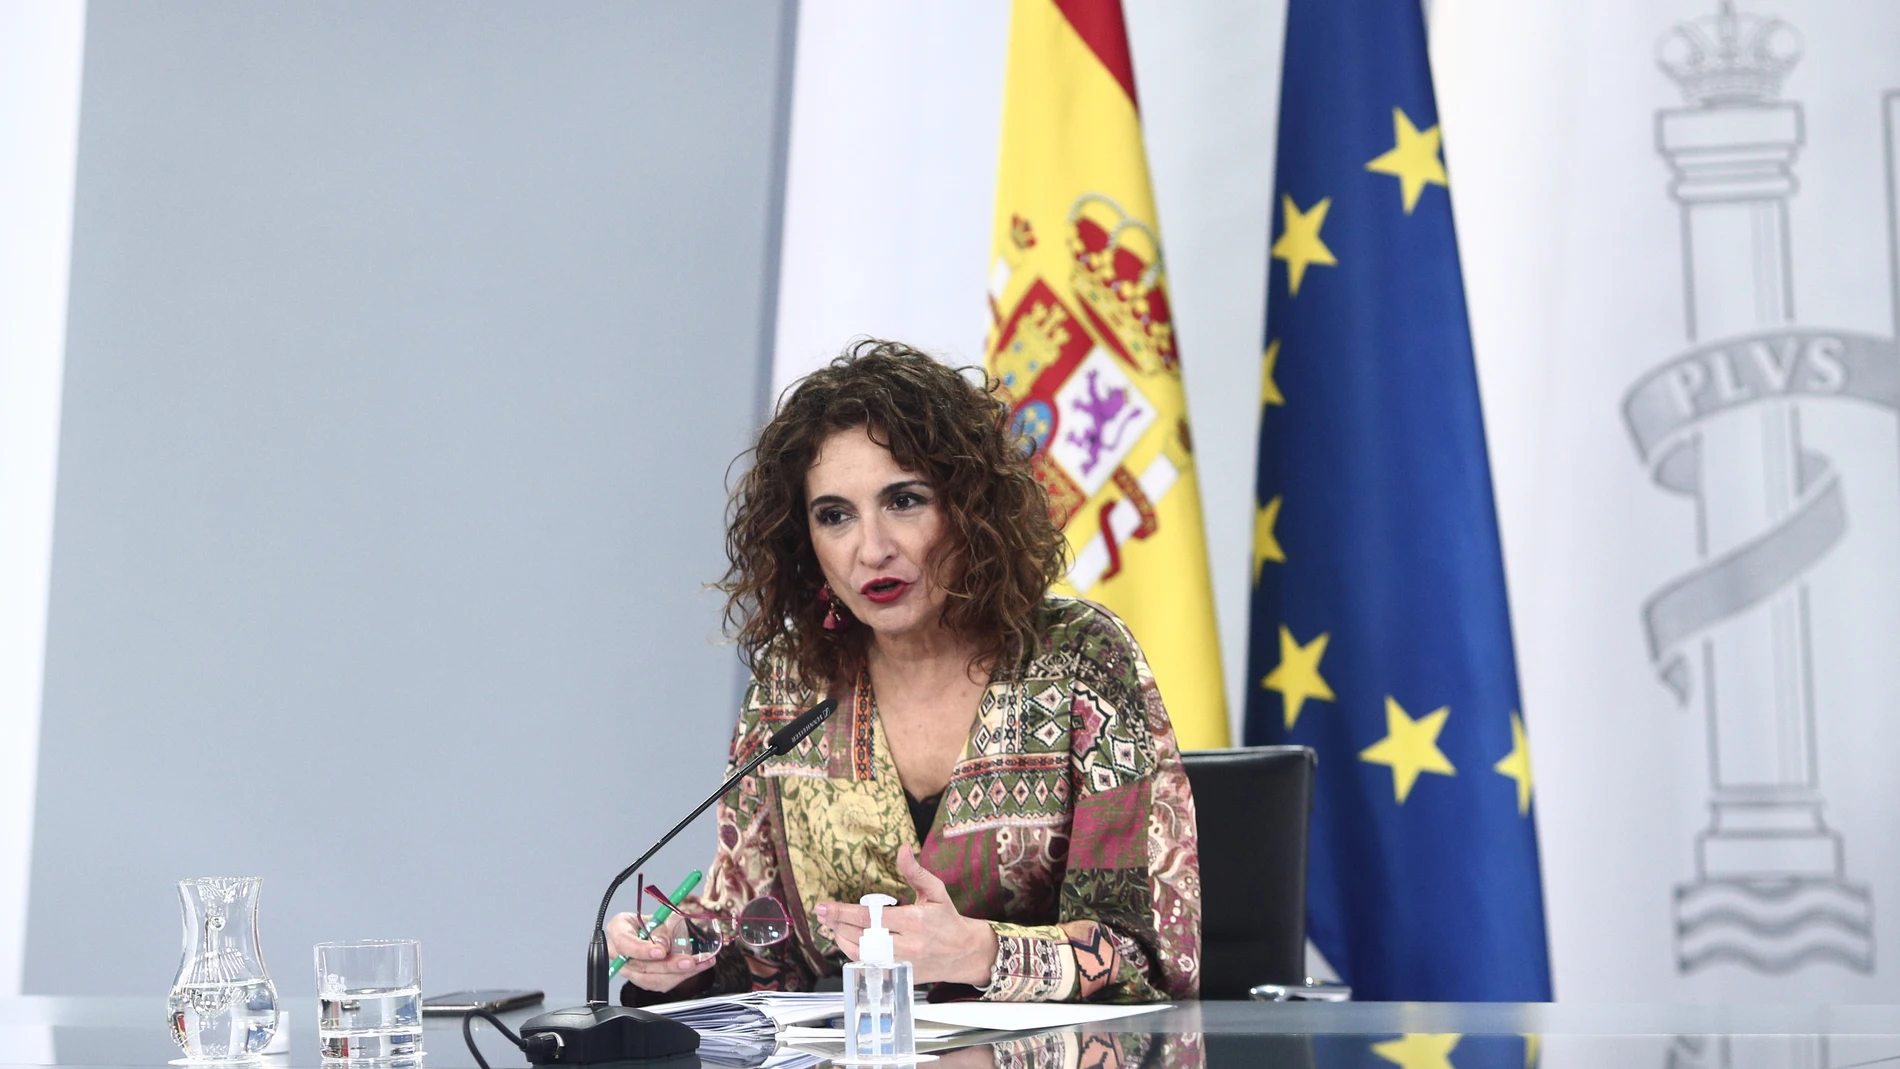 La ministra de Hacienda y portavoz del Gobierno, María Jesús Montero, durante la rueda de prensa posterior al Consejo de Ministros, en Madrid 